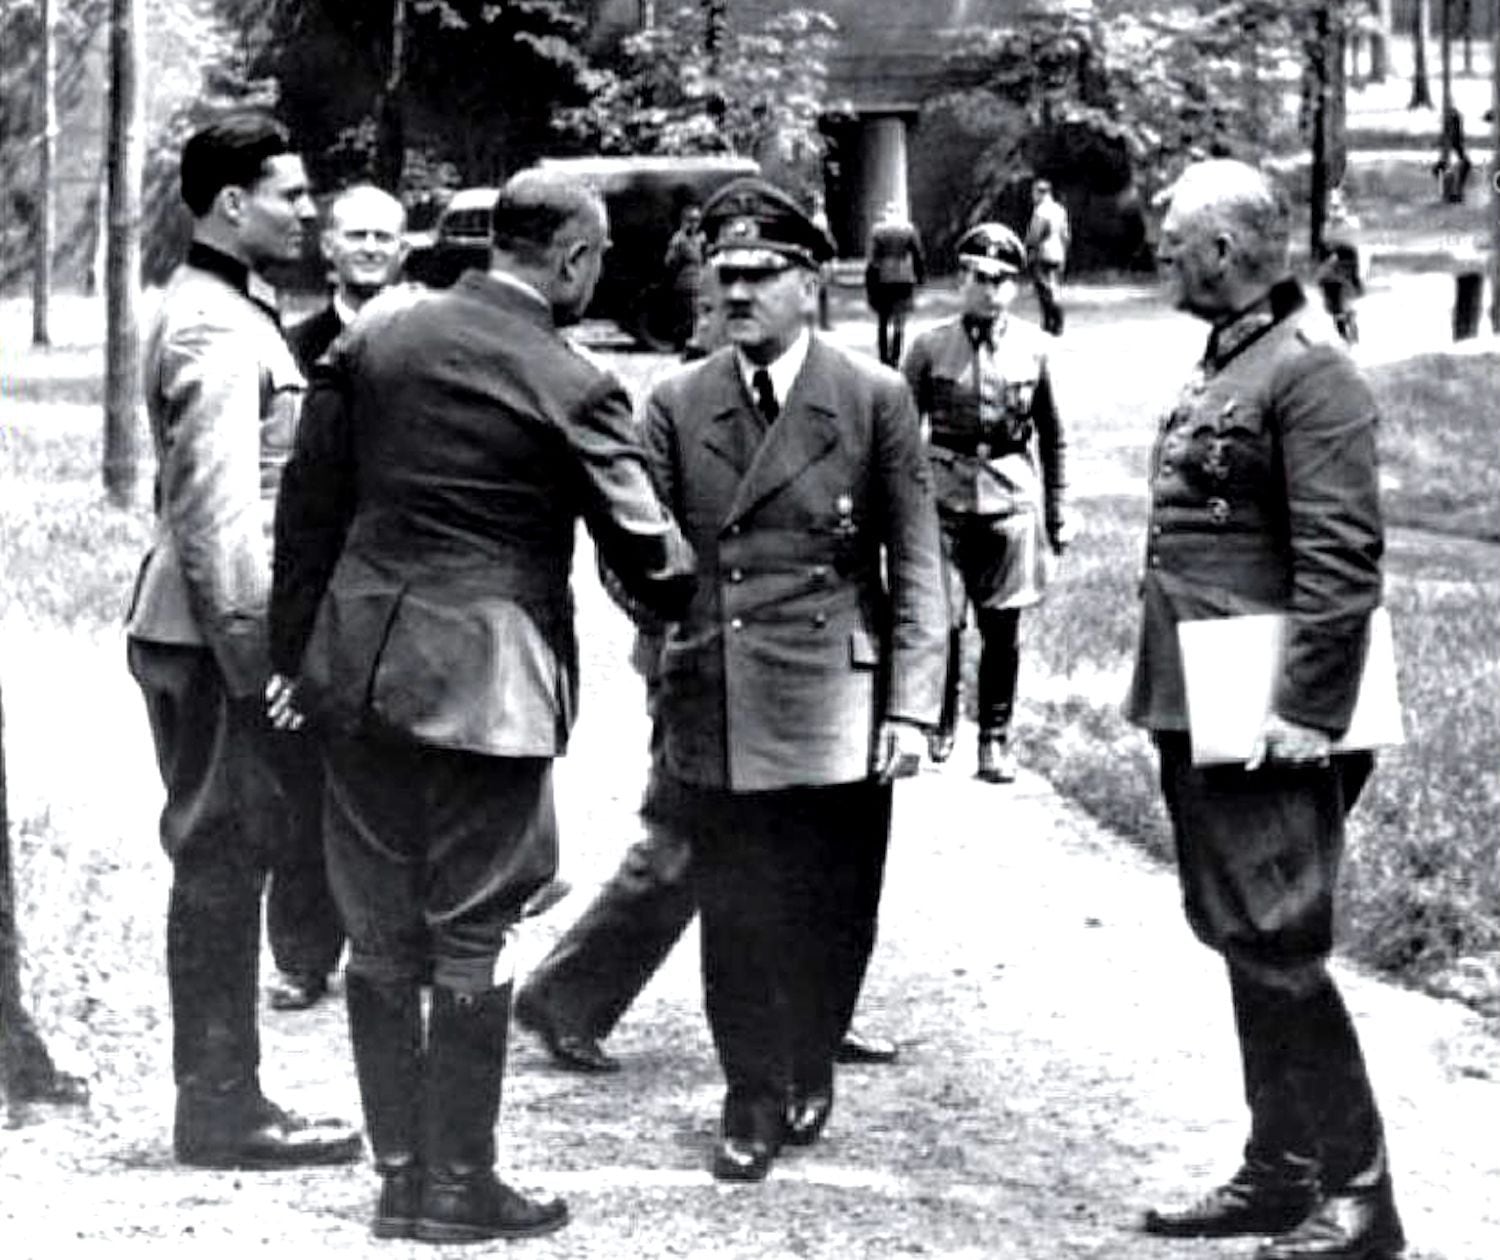 Cinco días antes de sufrir el atentado, Hitler recibió a varios oficiales en Rastenburg. Parado en posición de firme a la izquierda está Stauffenberg, quien colocaría la bomba